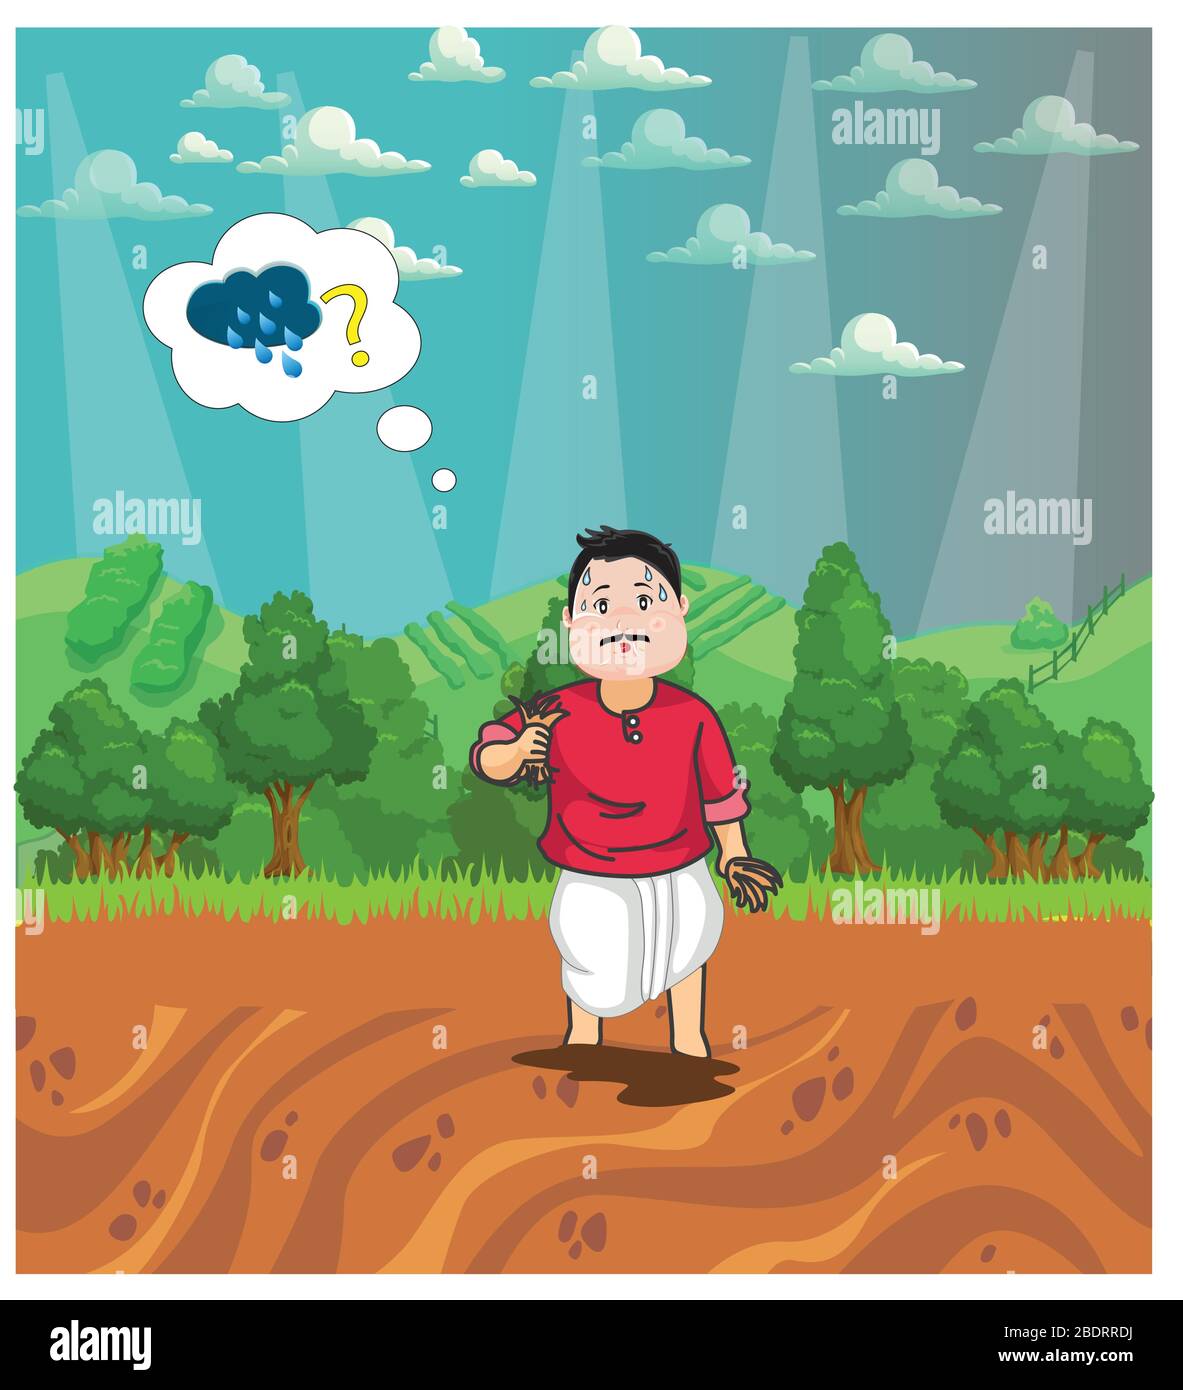 El granjero que usa tristemente para la lluvia como granjero no puede comenzar a cultivar sin agua. Diseño del carácter del granjero que piensa sobre la lluvia para la agricultura. Paisaje desig Ilustración del Vector